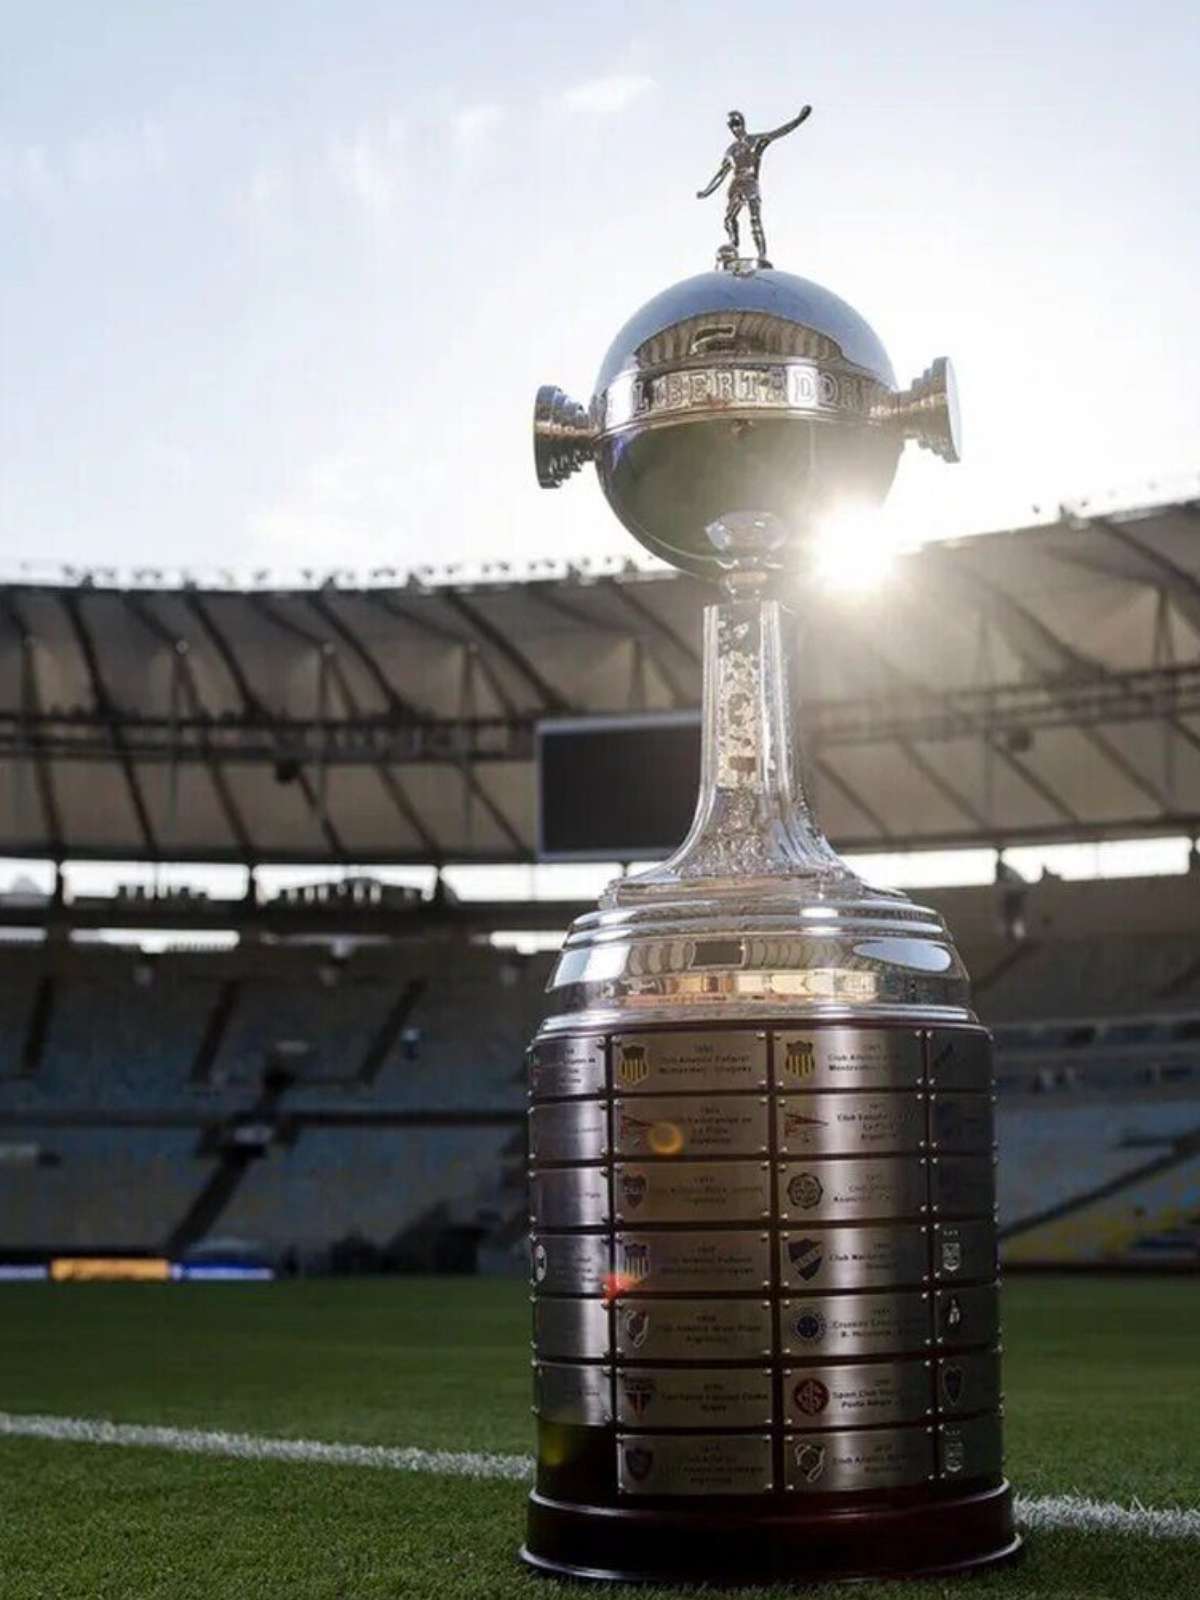 Boca Juniors x Fluminense: onde assistir ao vivo, horário e escalações, libertadores